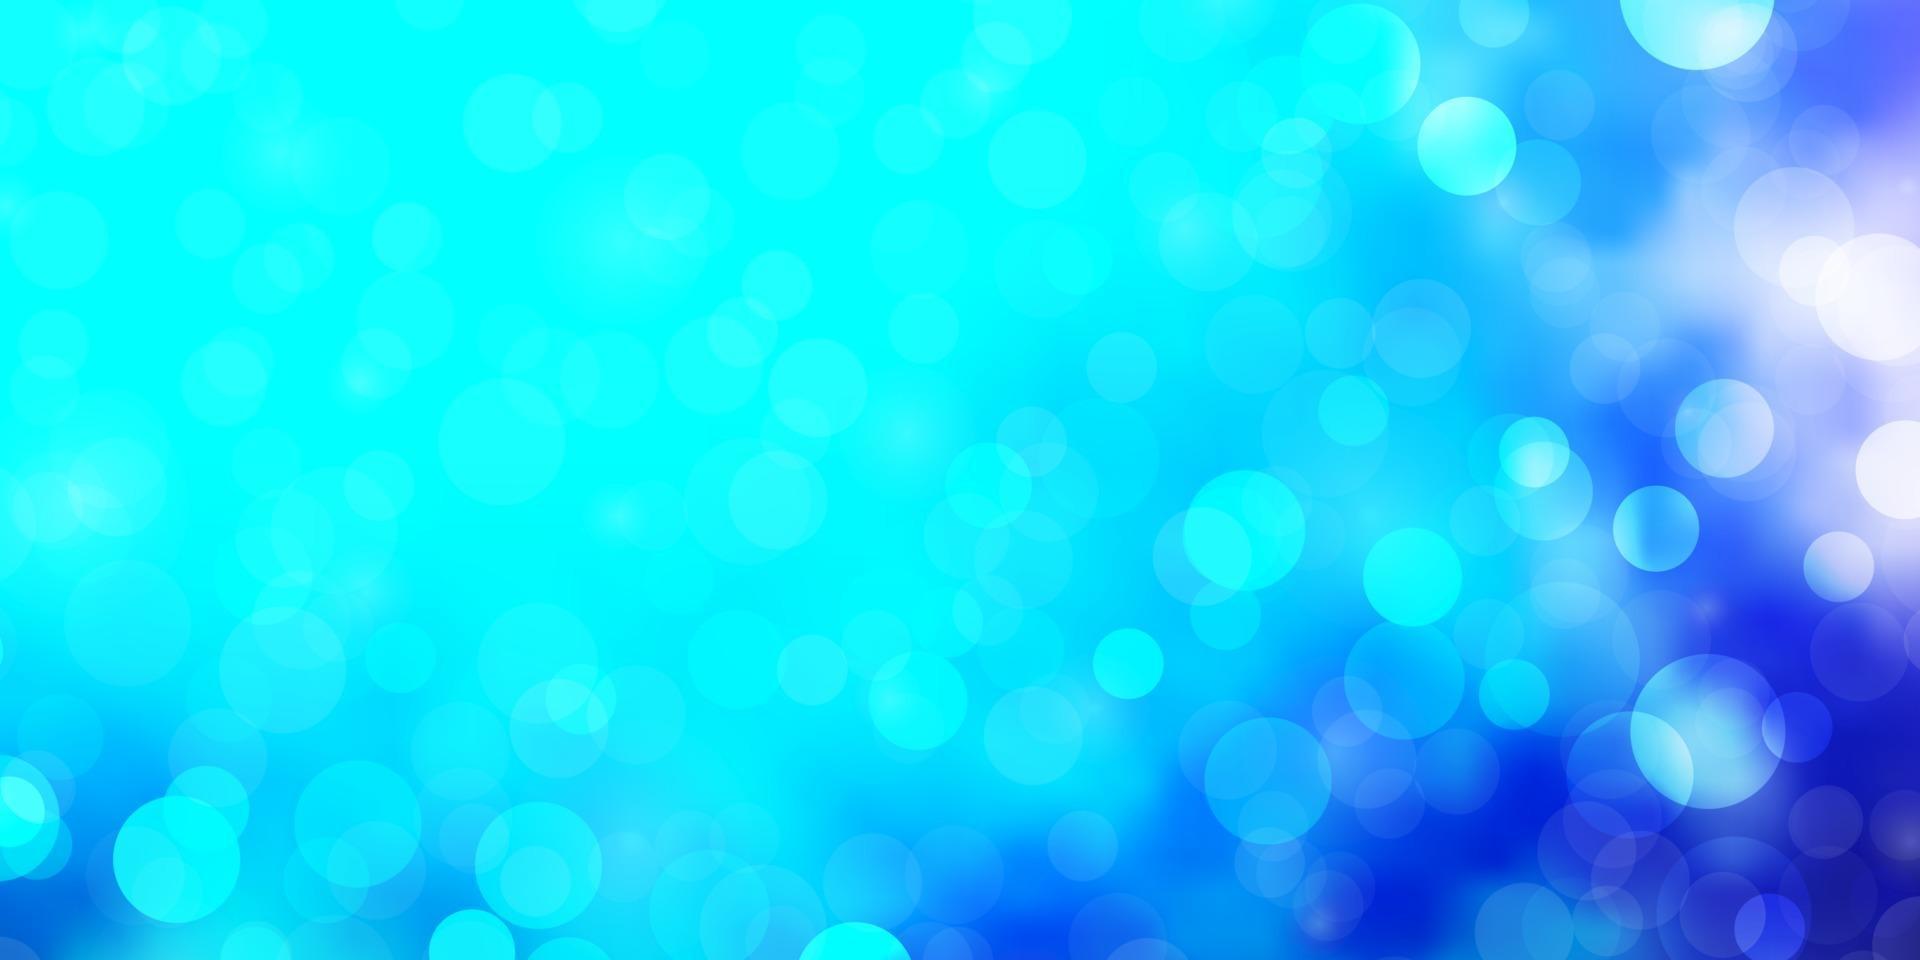 hellrosa, blauer Vektorhintergrund mit Kreisen. vektor